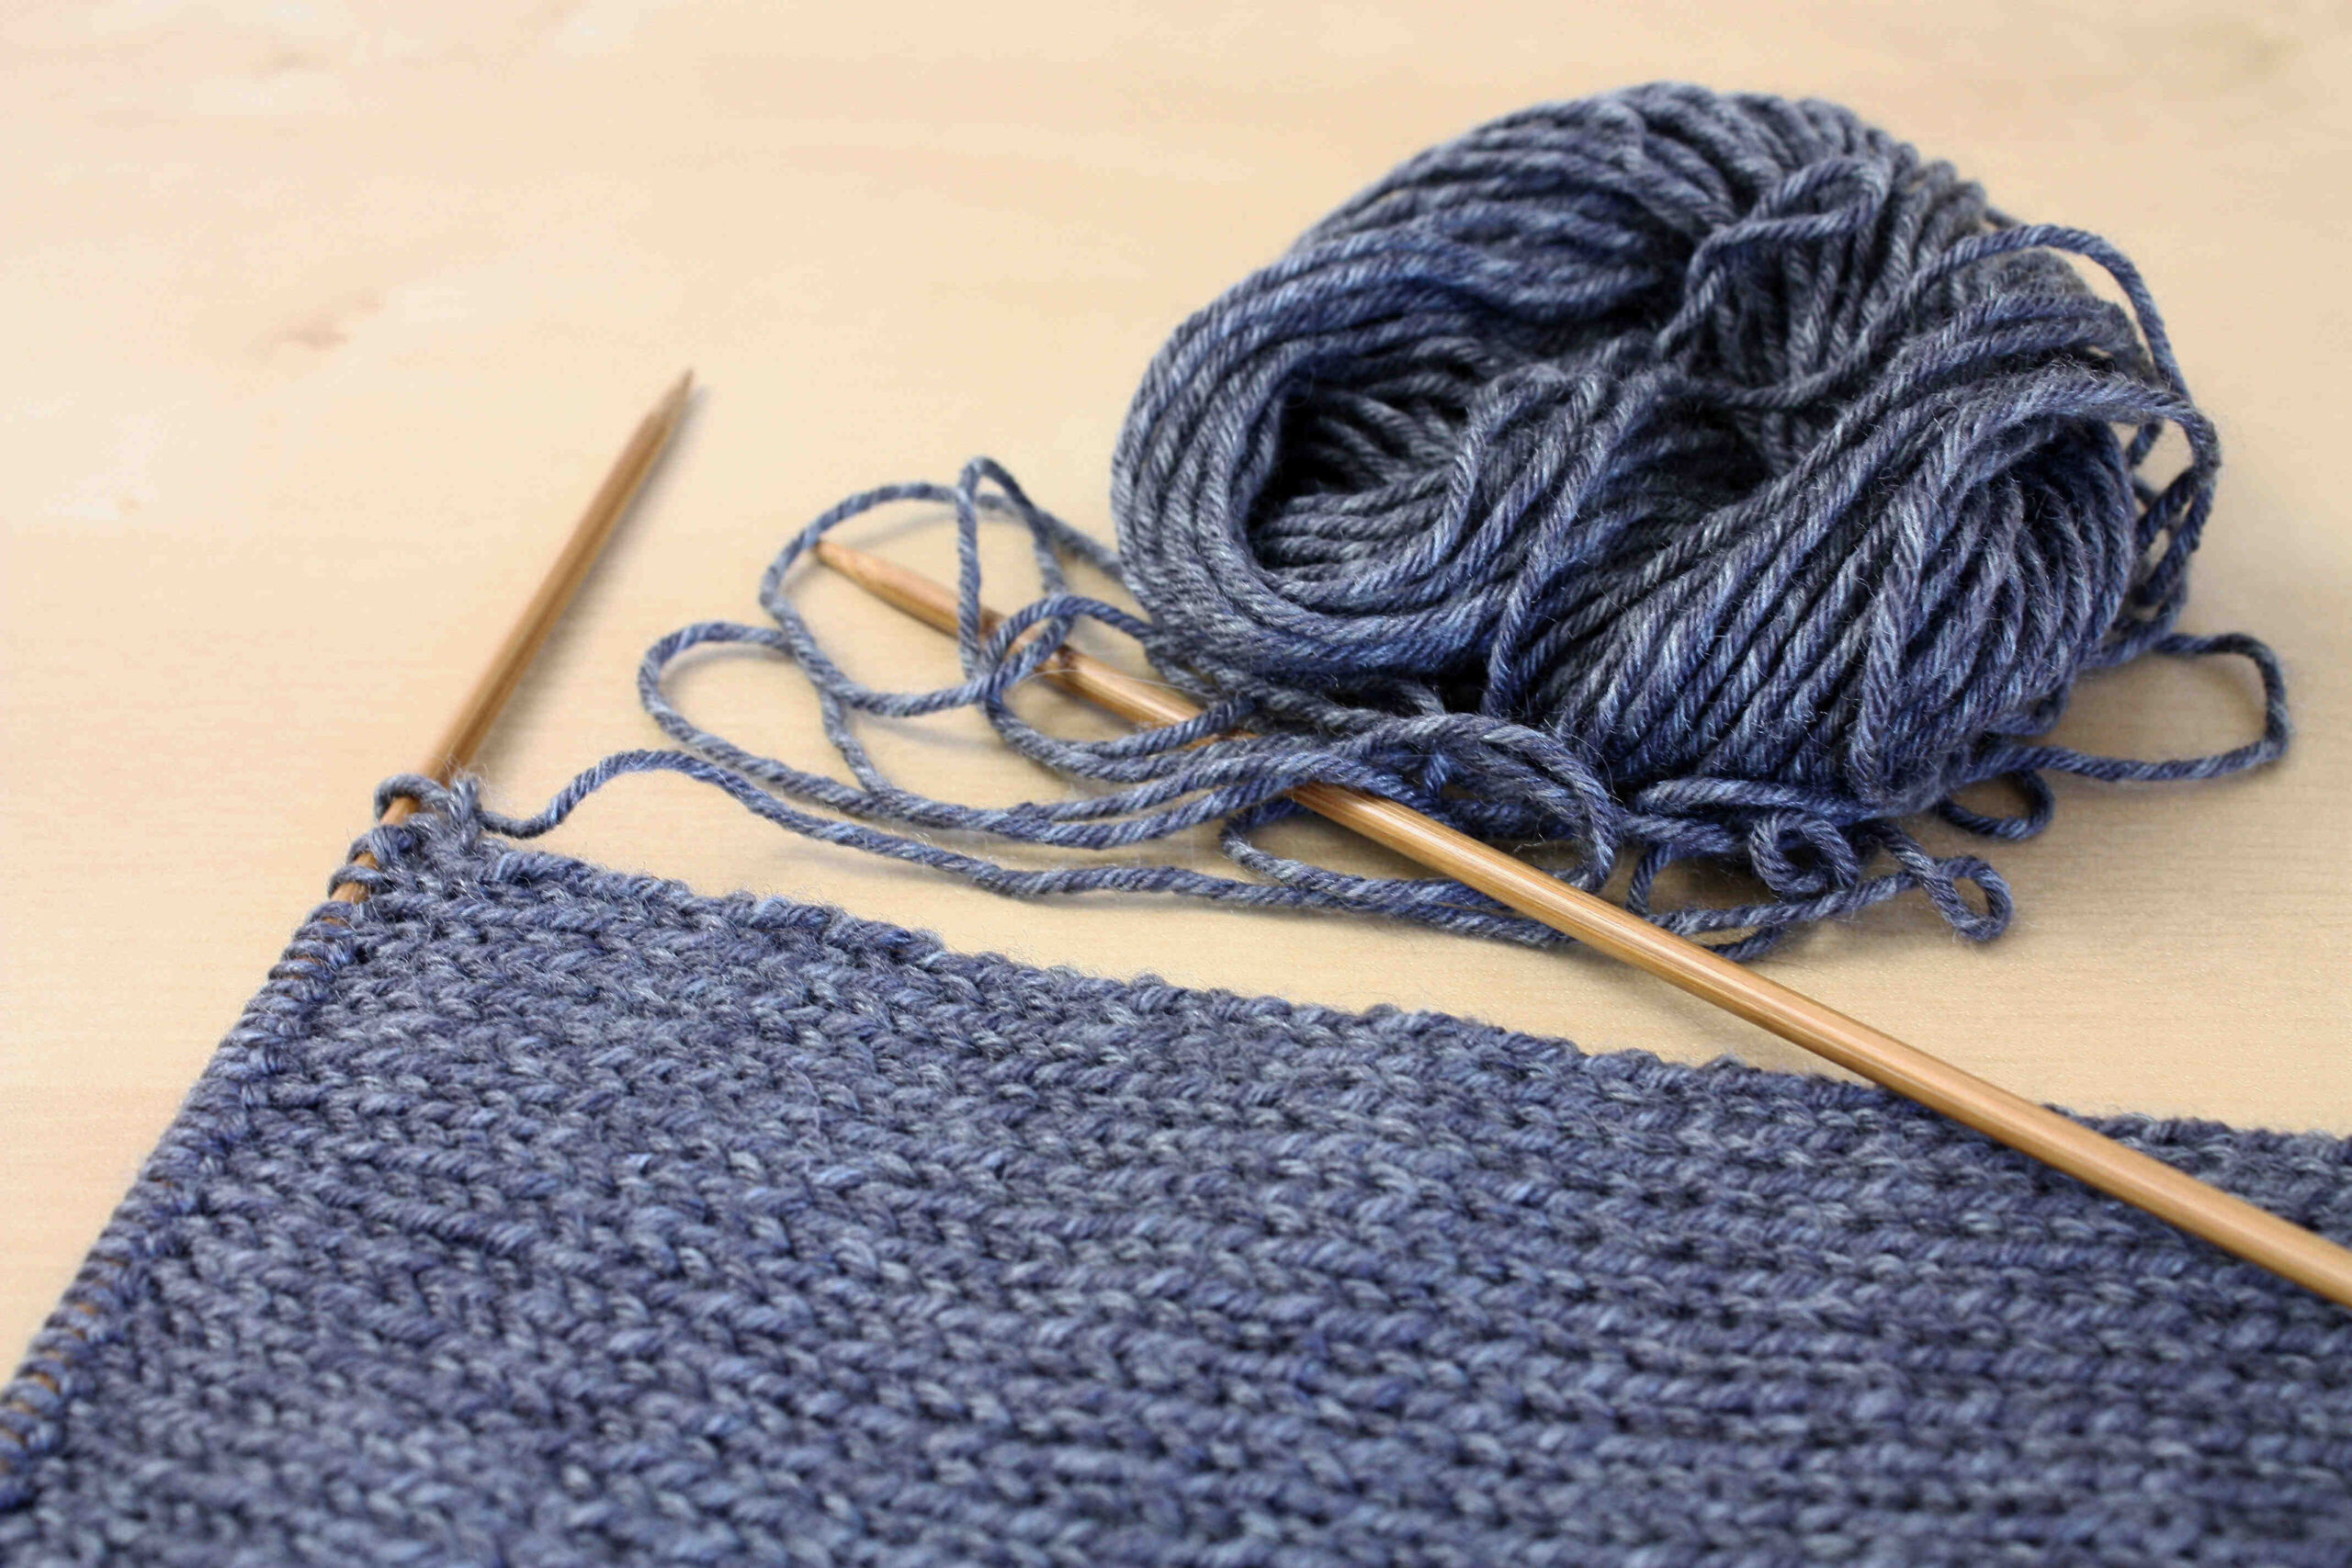 Comment faire une écharpe tricotée?